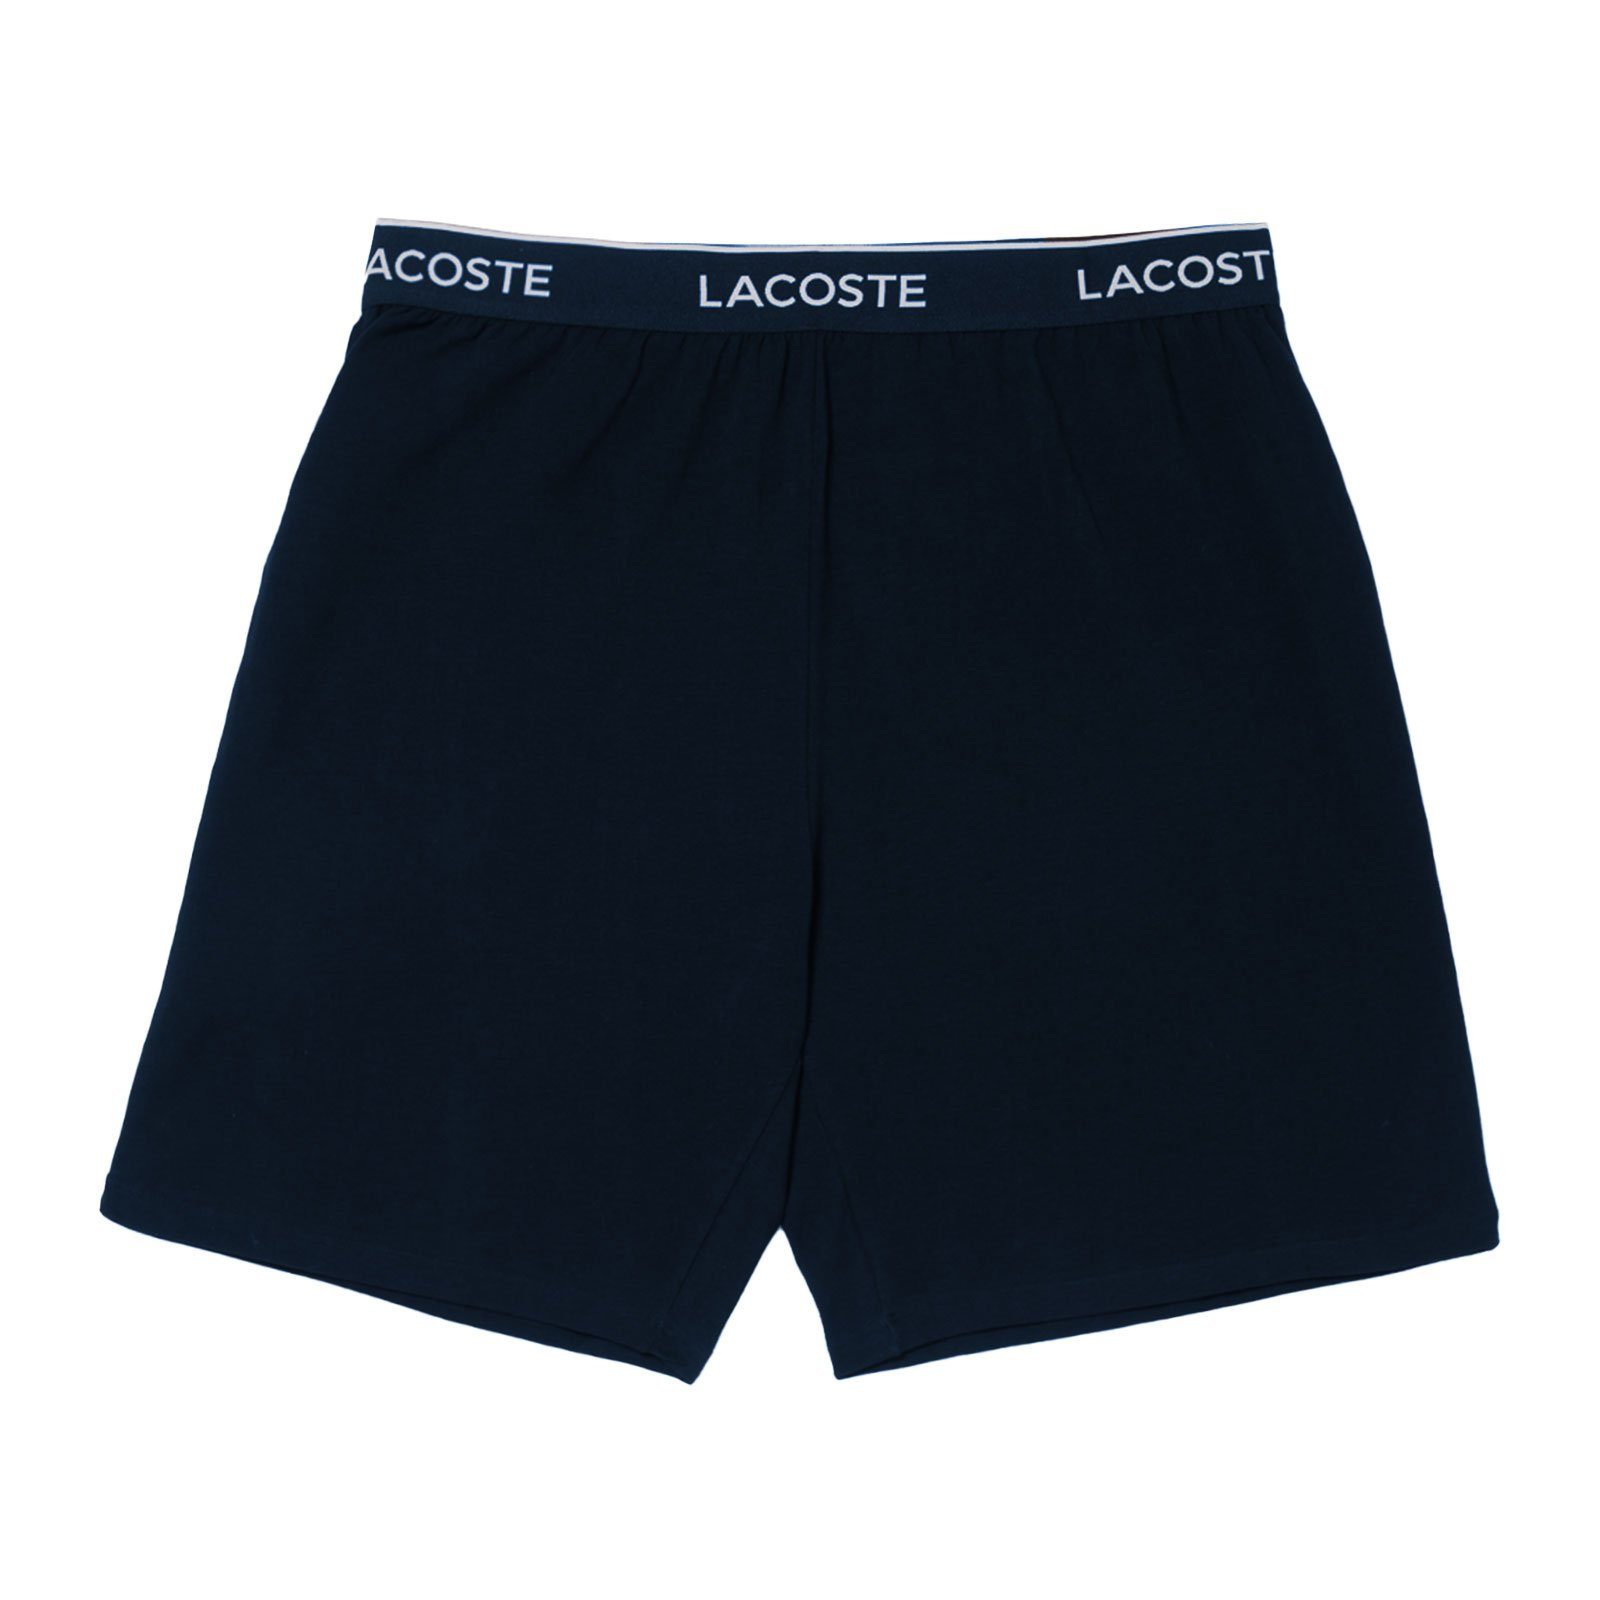 Lacoste Pyjamashorts Loungewear Shorts mit umlaufenden Markenschriftzug 166 bleu marine